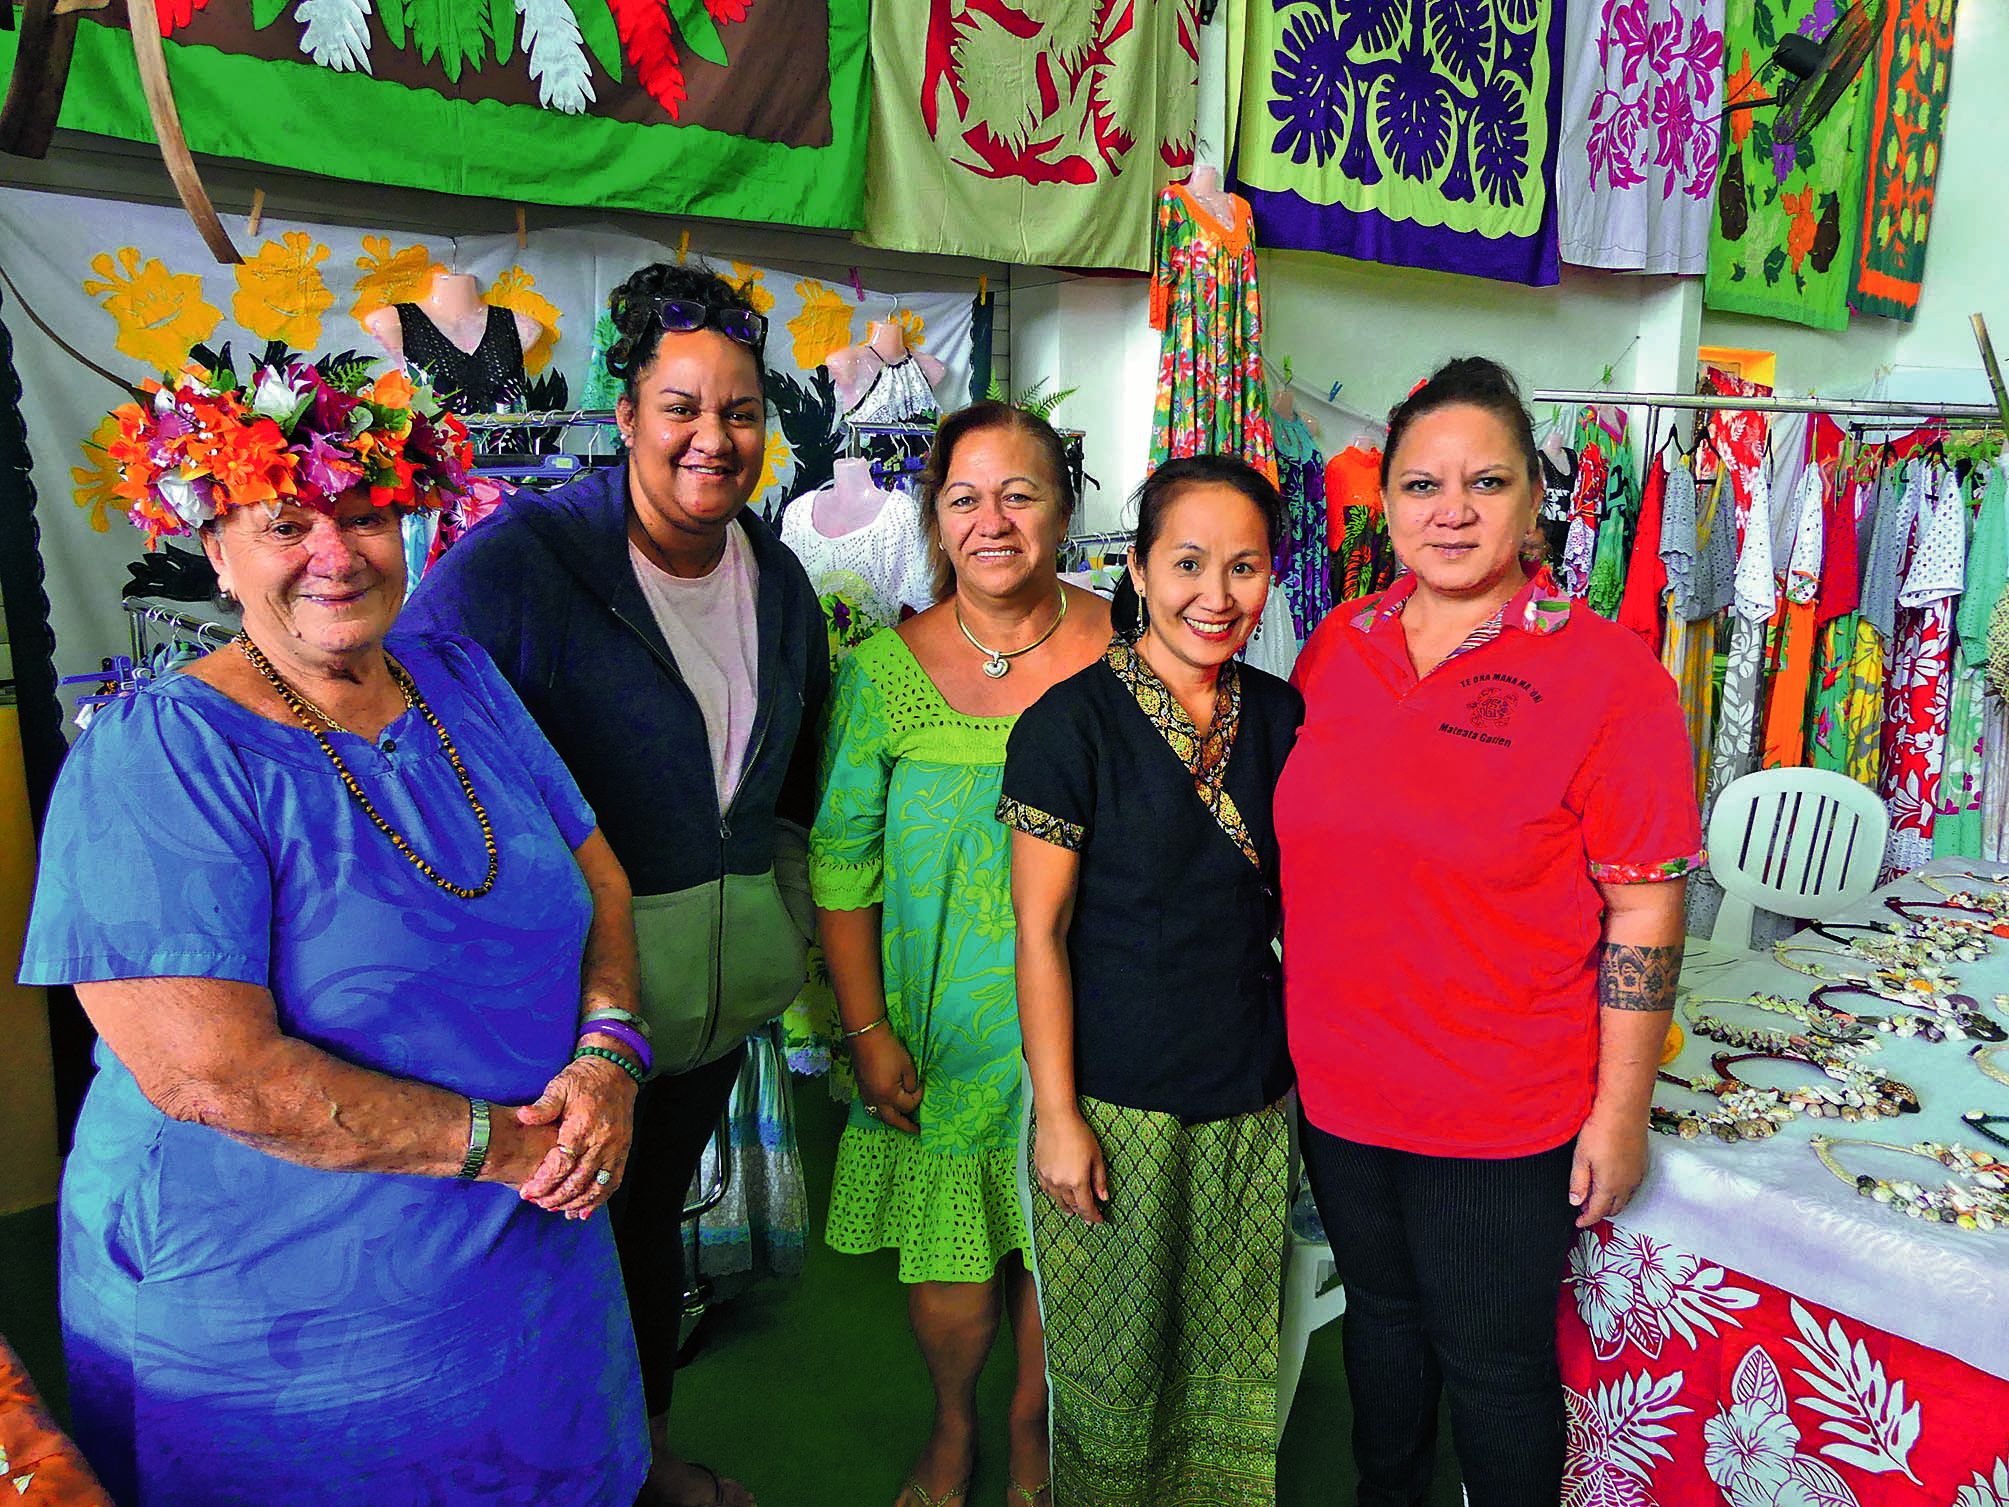 Pour les artisans venus des îles Australes, cette exposition est l’occasion de mettre en avant leurs travaux et de dénicher de nouveaux marchés.